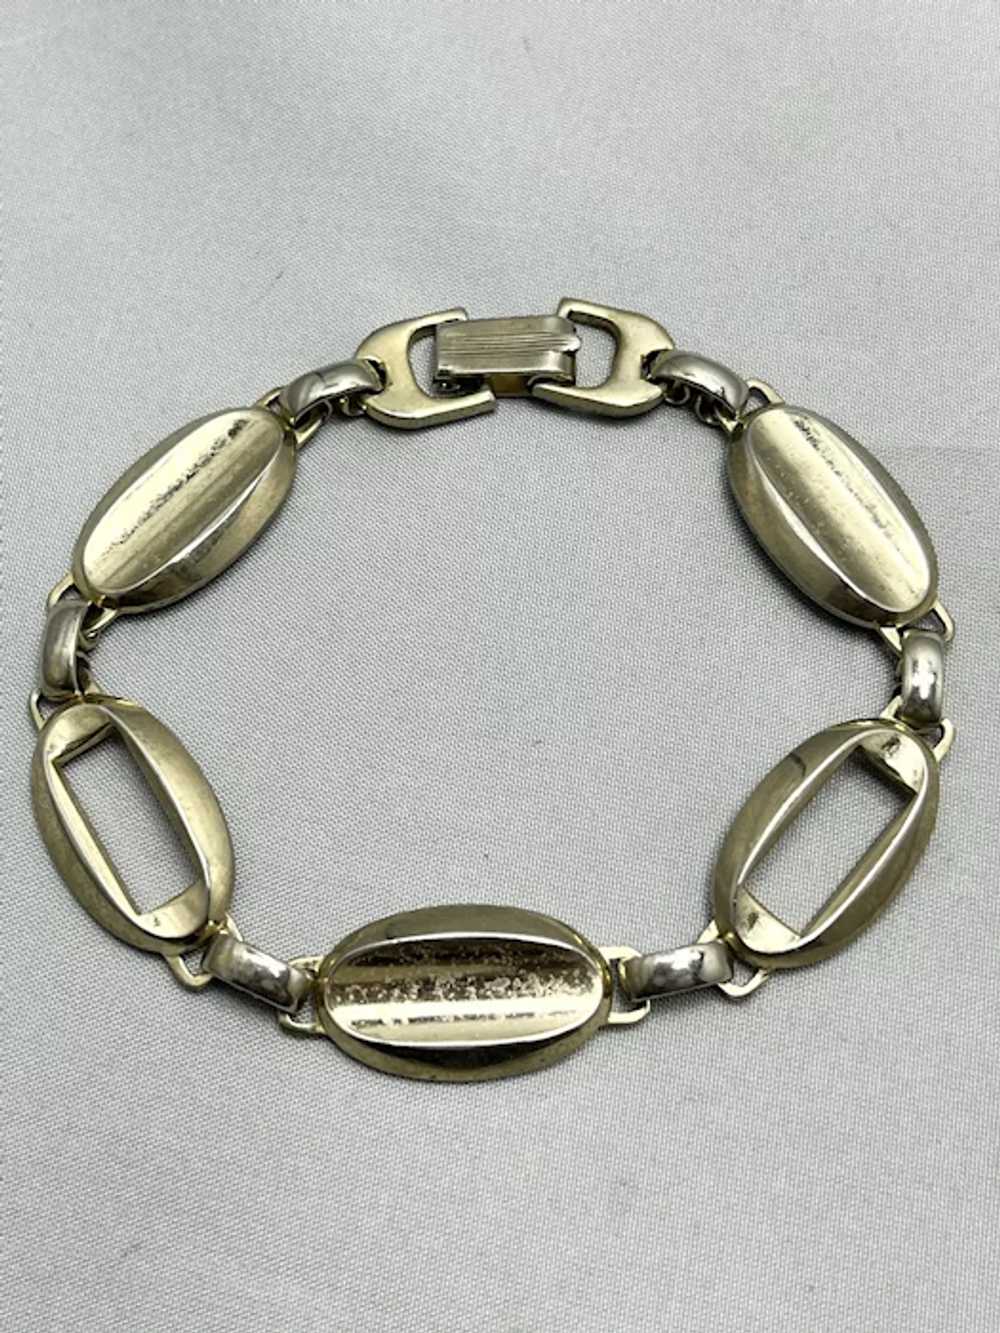 Vintage Marino Gold Tone Chain Bracelet - image 2